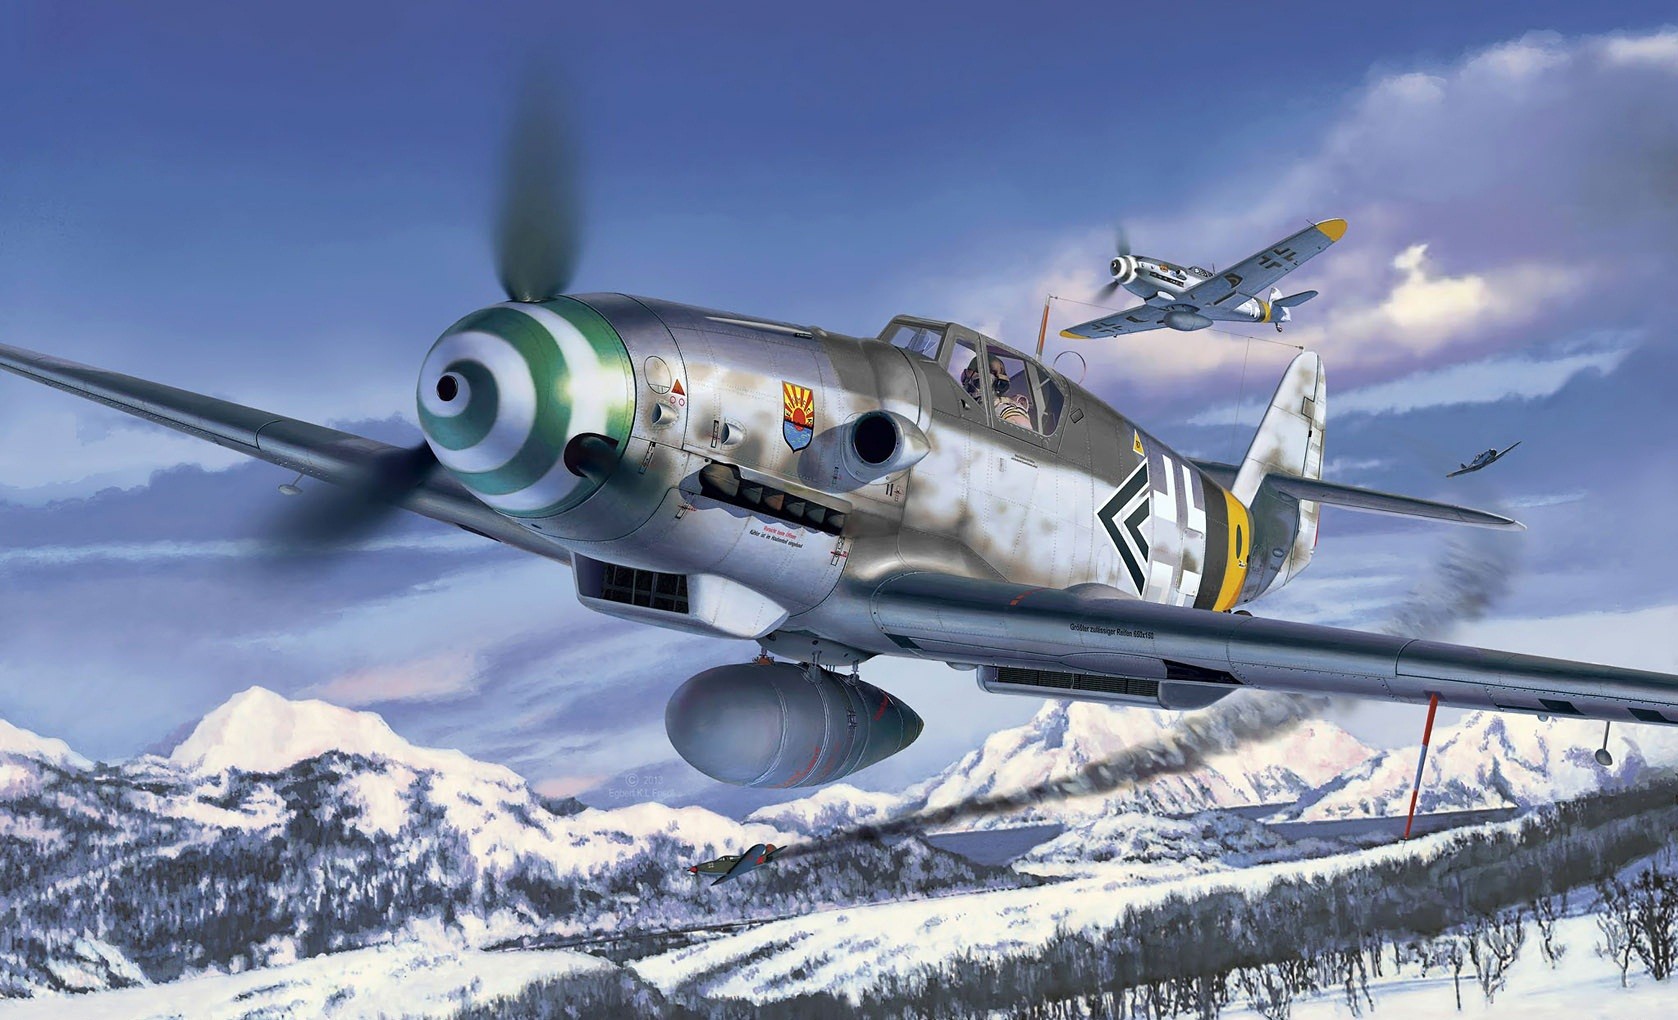 Messerschmitt Messerschmitt Bf 109 Luftwaffe Artwork Military Aircraft World War Ii Germany Warbird 1678x1020